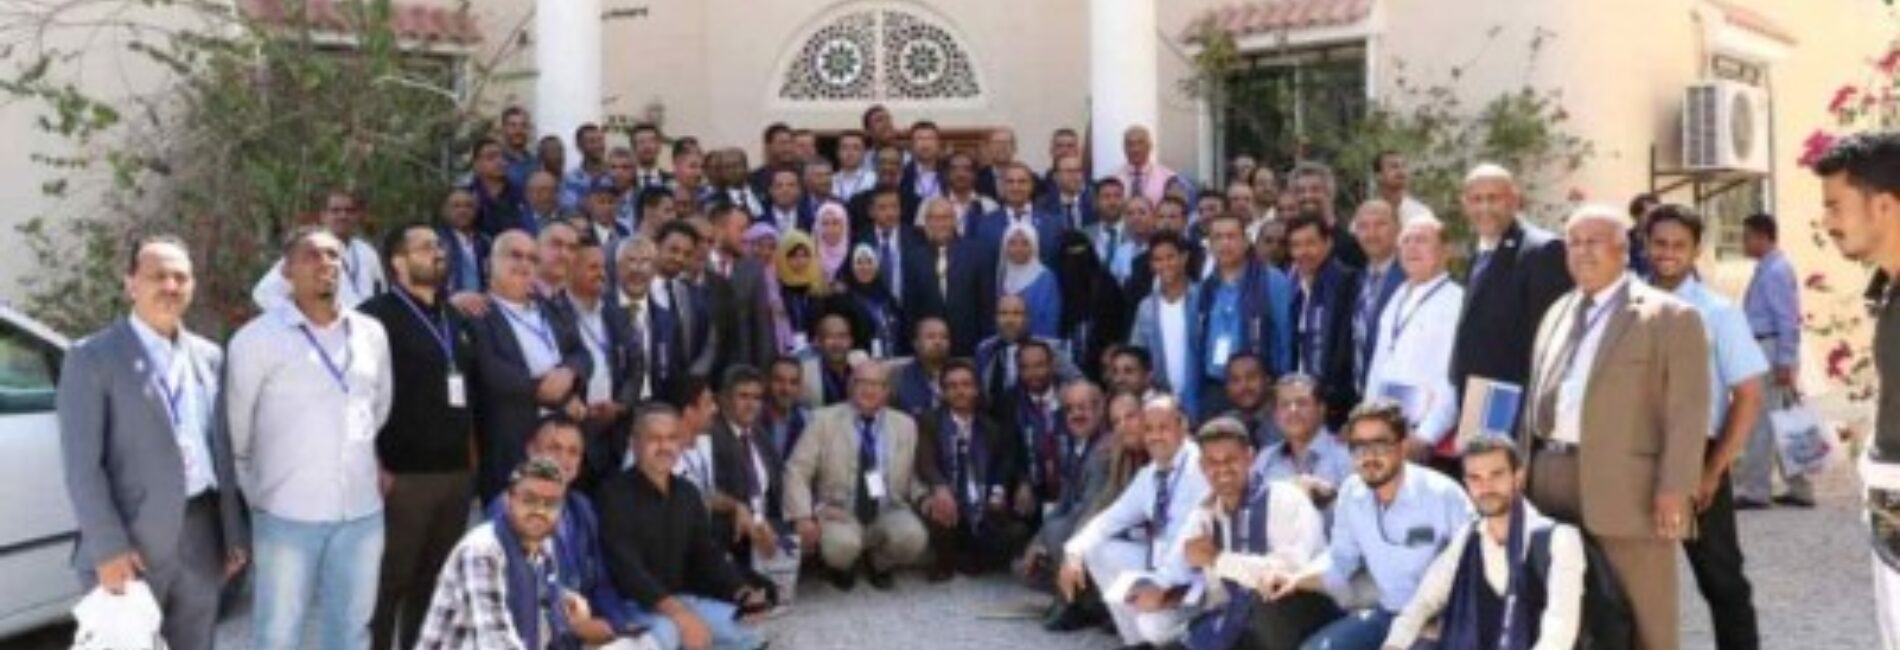 الاجتماع السنوي للخطوط الجوية اليمنية يختتم أعماله اليوم
الاتفاق على شراء طائرة جديدة وتحديث أسطول الشركة وإعادة الهيكلة.